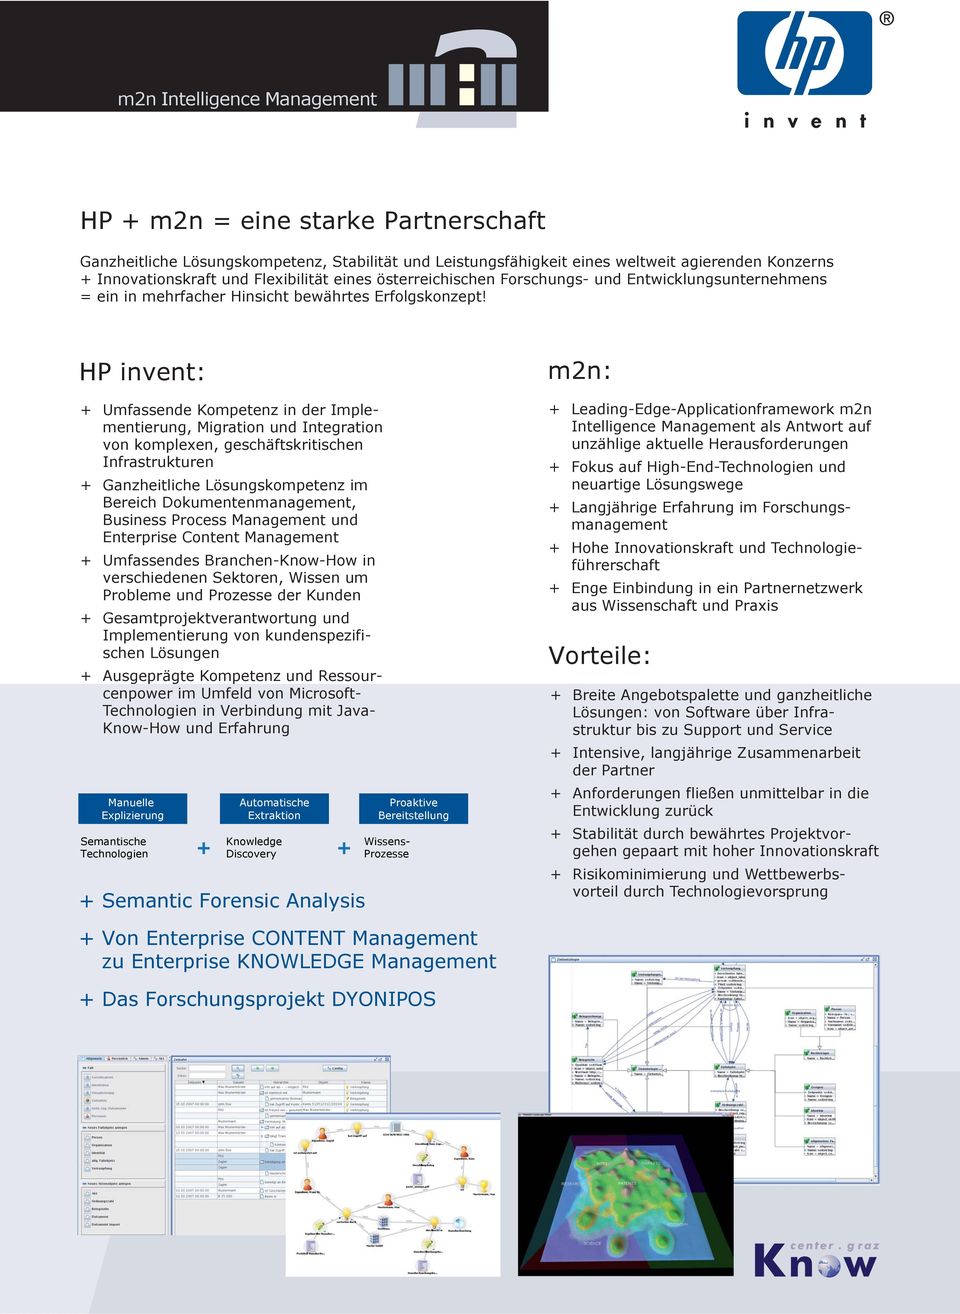 HP invent: + Umfassende Kompetenz in der Implementierung, Migration und Integration von komplexen, geschäftskritischen Infrastrukturen + Ganzheitliche Lösungskompetenz im Bereich